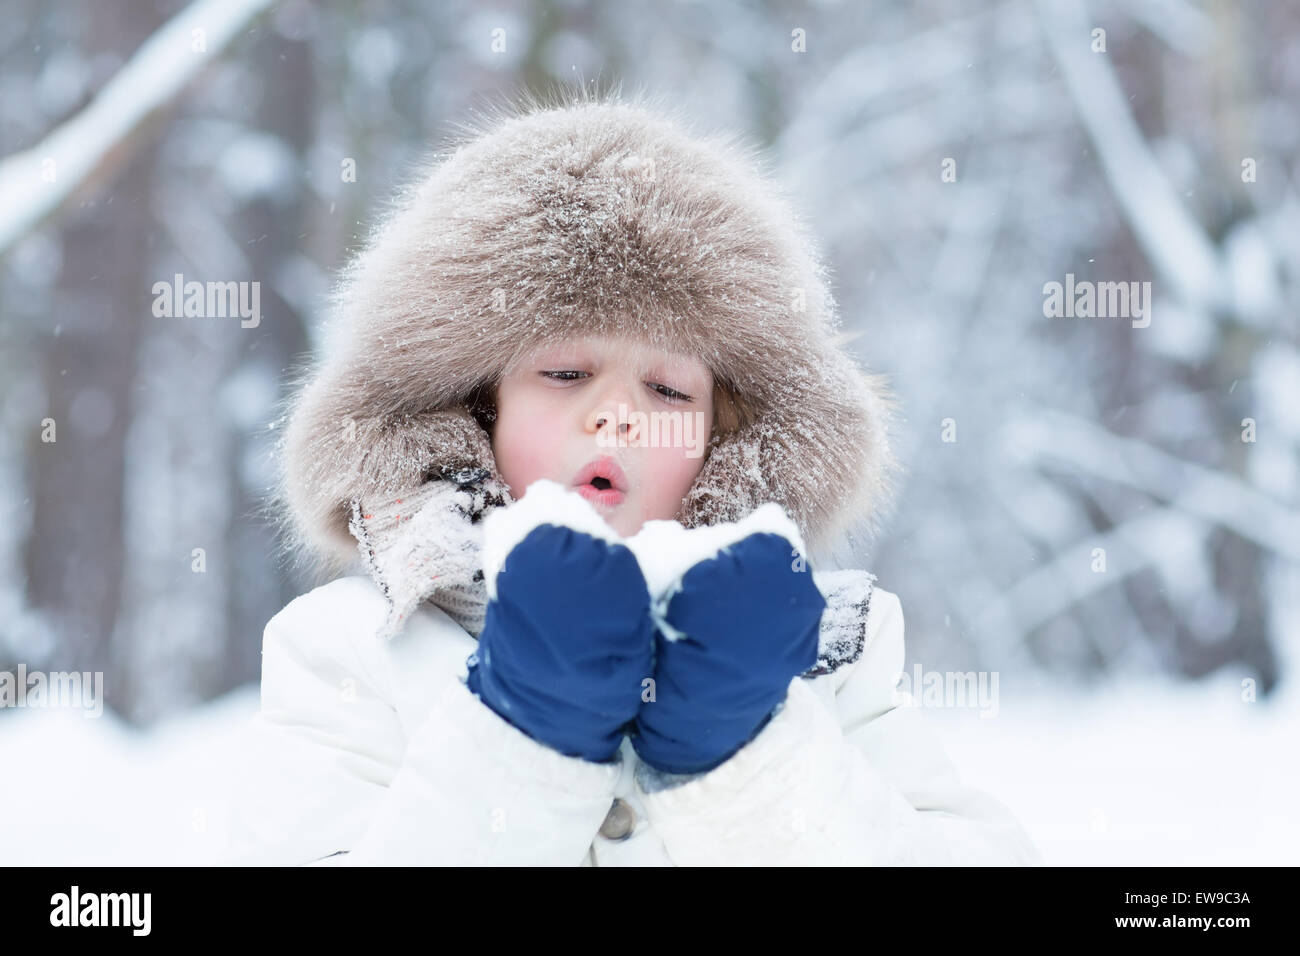 Niedlichen Kind spielt mit Winter in einem Winter park Stockfoto